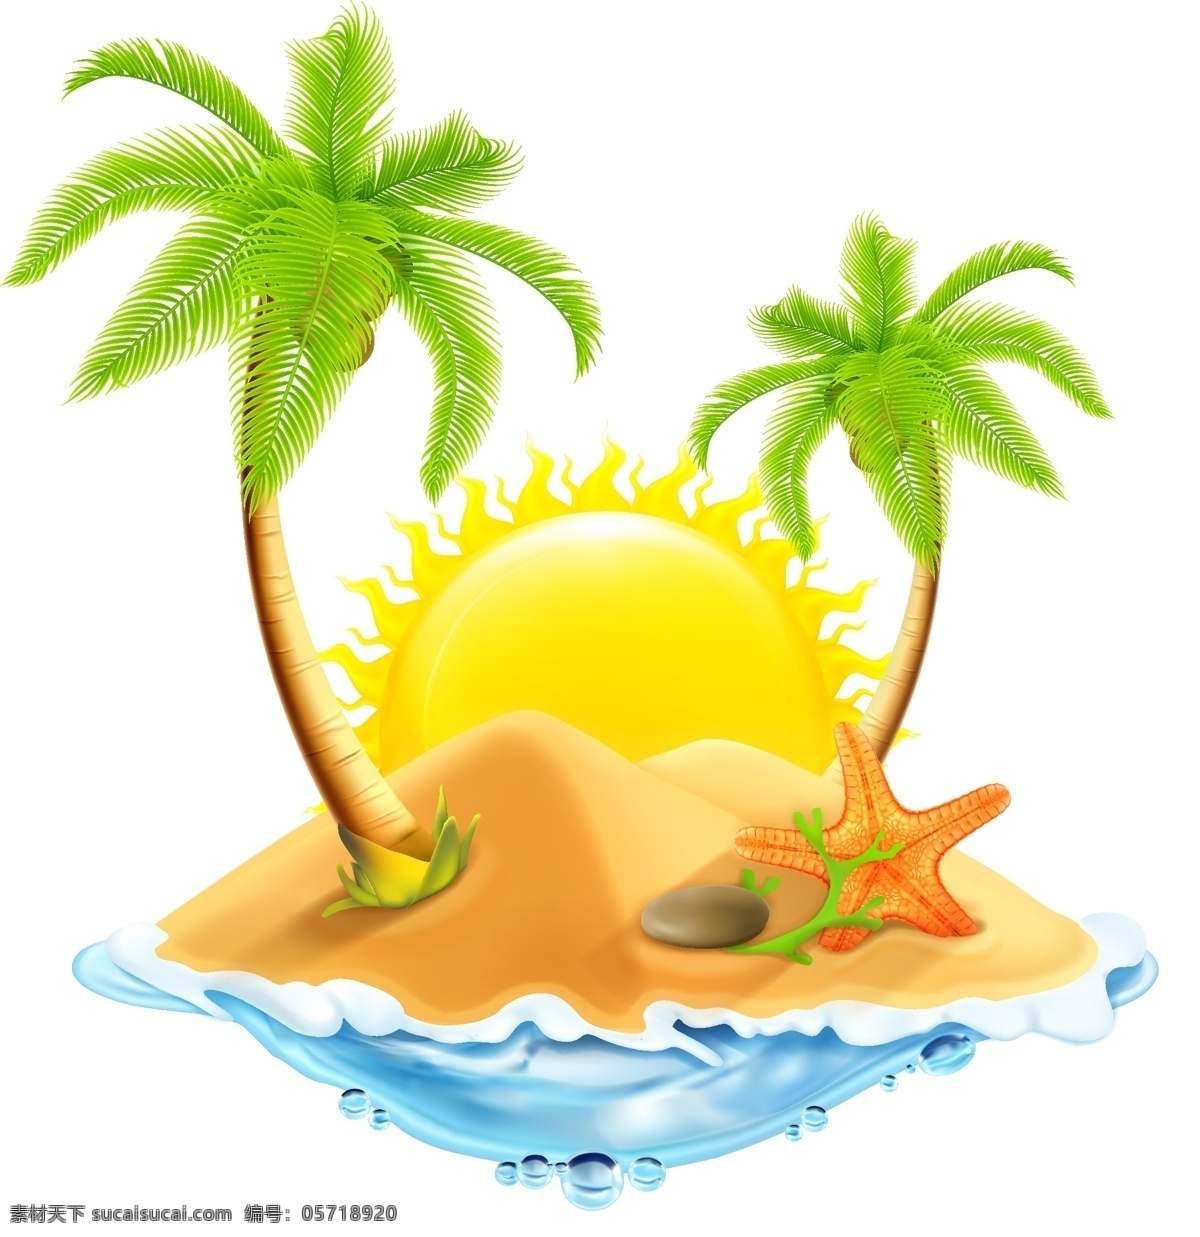 手绘 度假 海边 元素 卡通 蓝色 大海 沙滩 阳光 椰树 海星